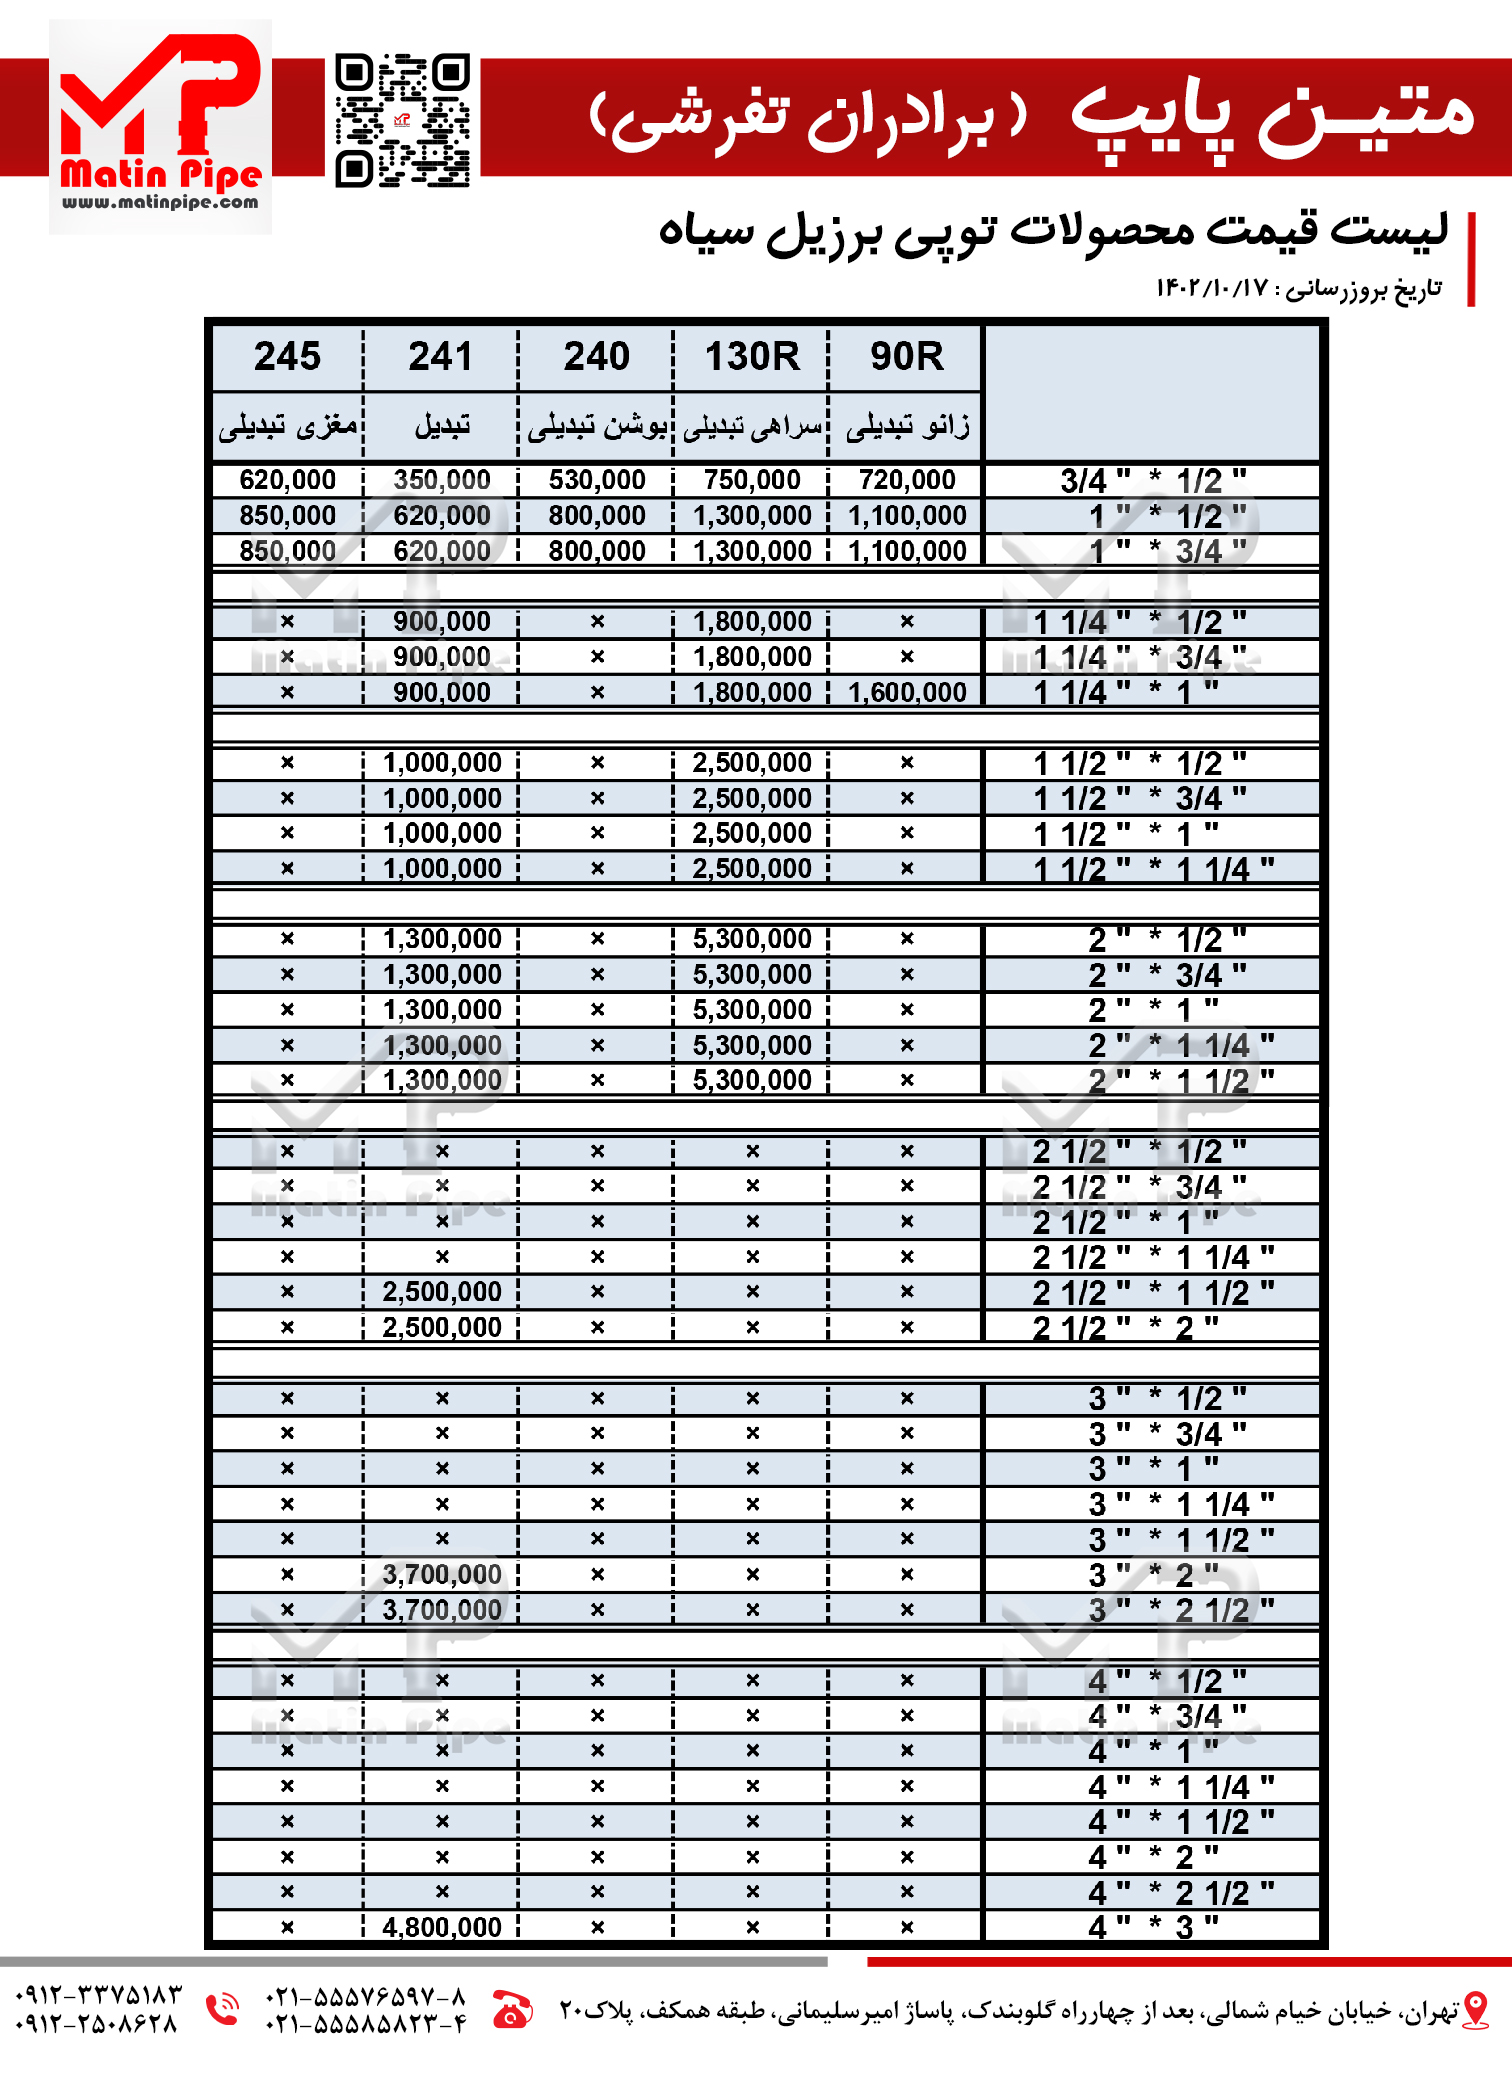 لیست قیمت توپی برزیل